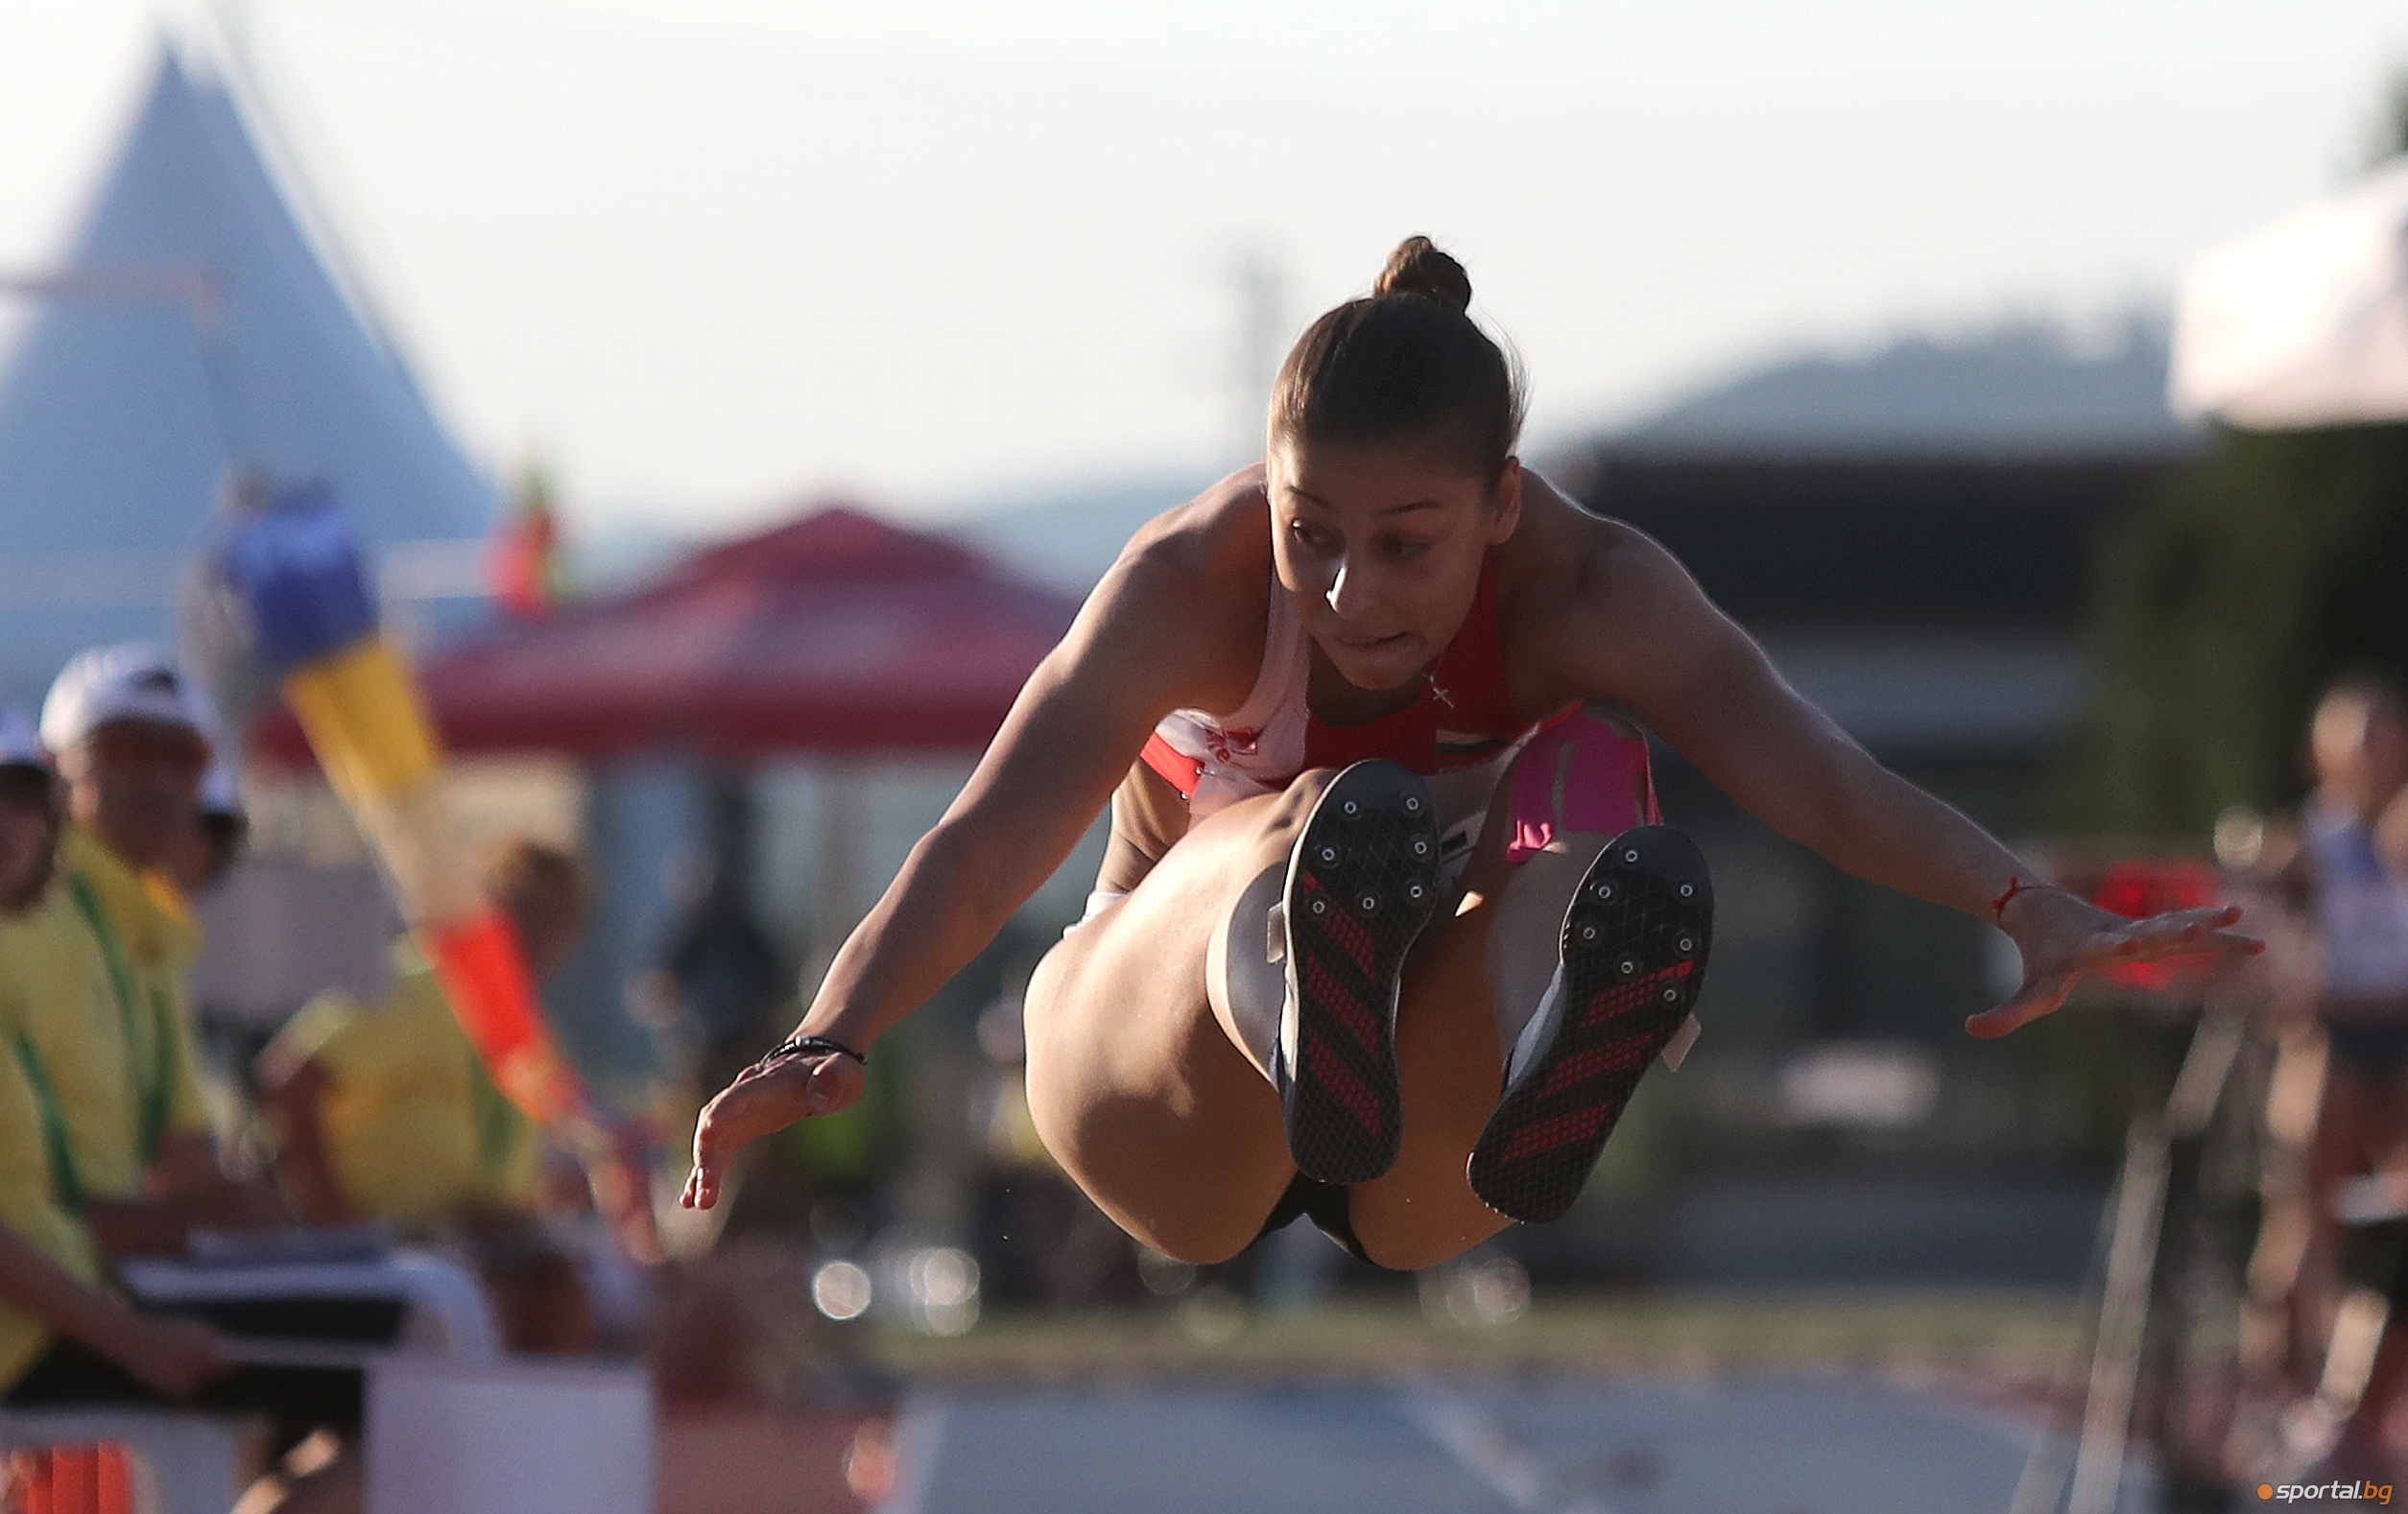 Младежката олимпийска шампионка в тройния скок от Буенос Айрес Александра